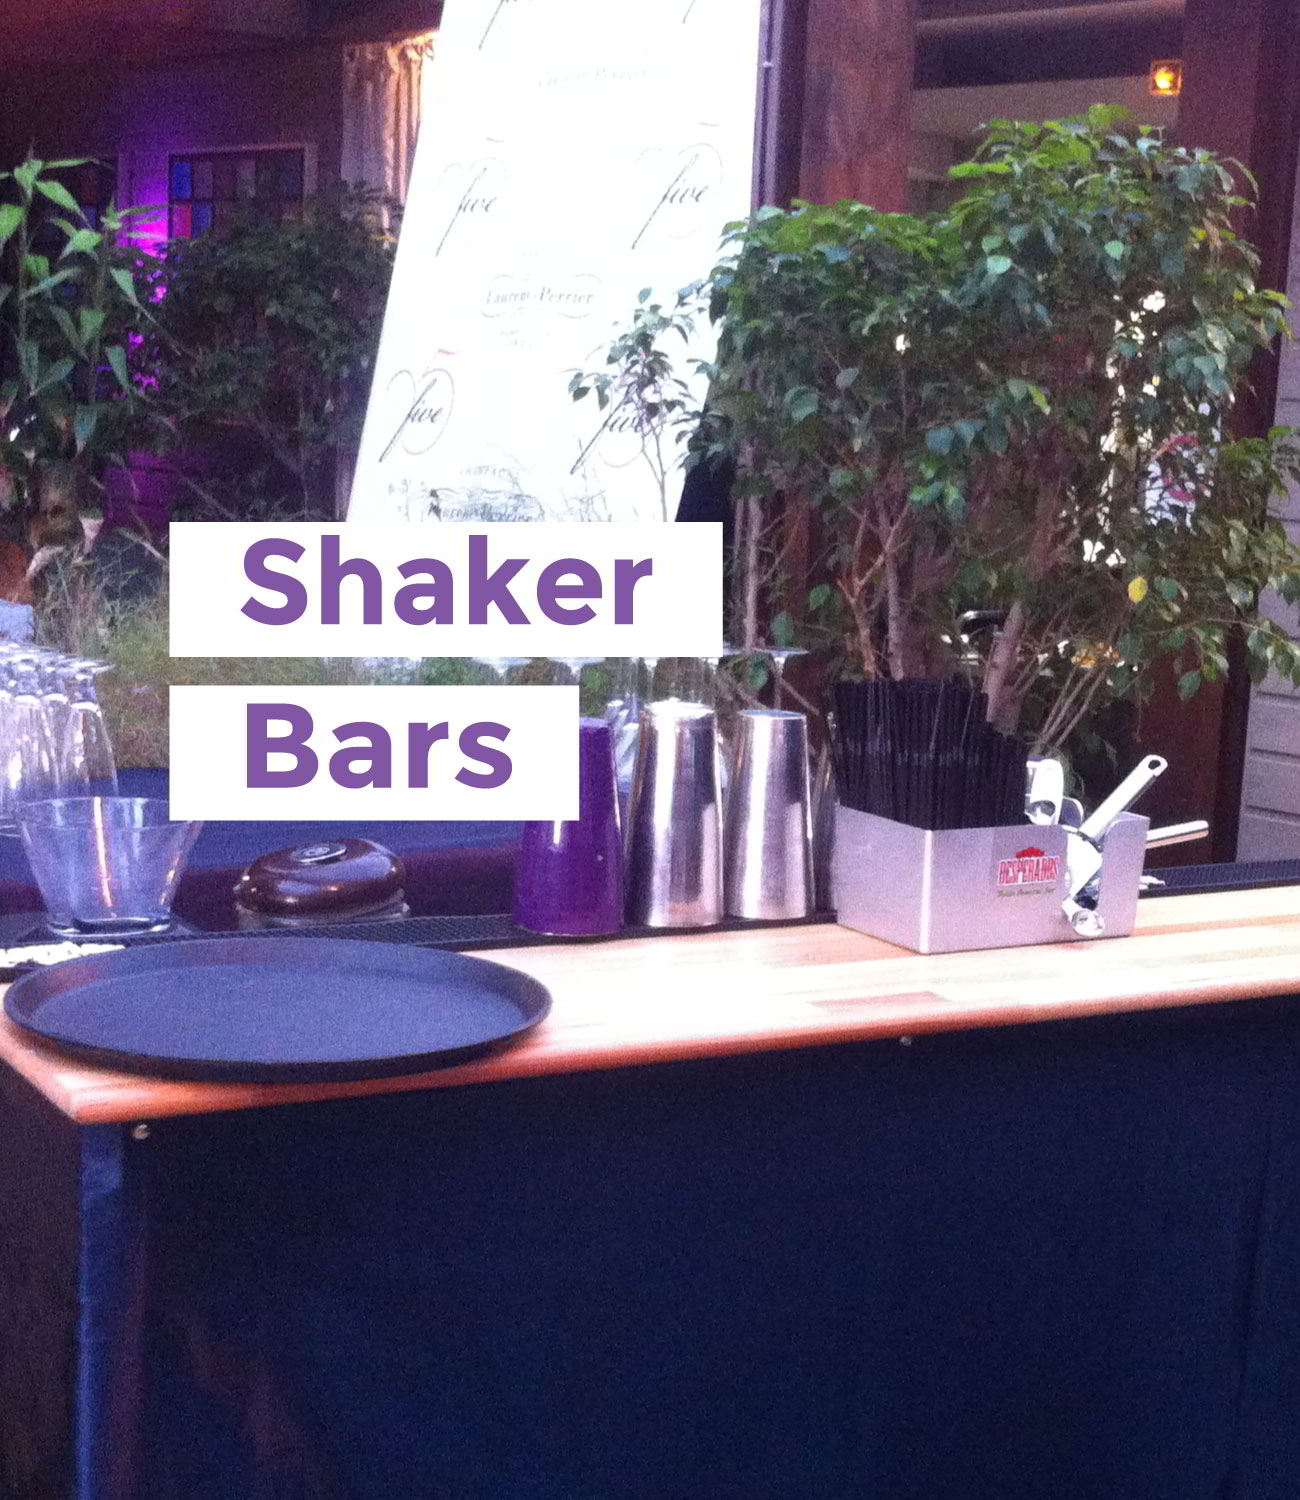 Un des shakers bars